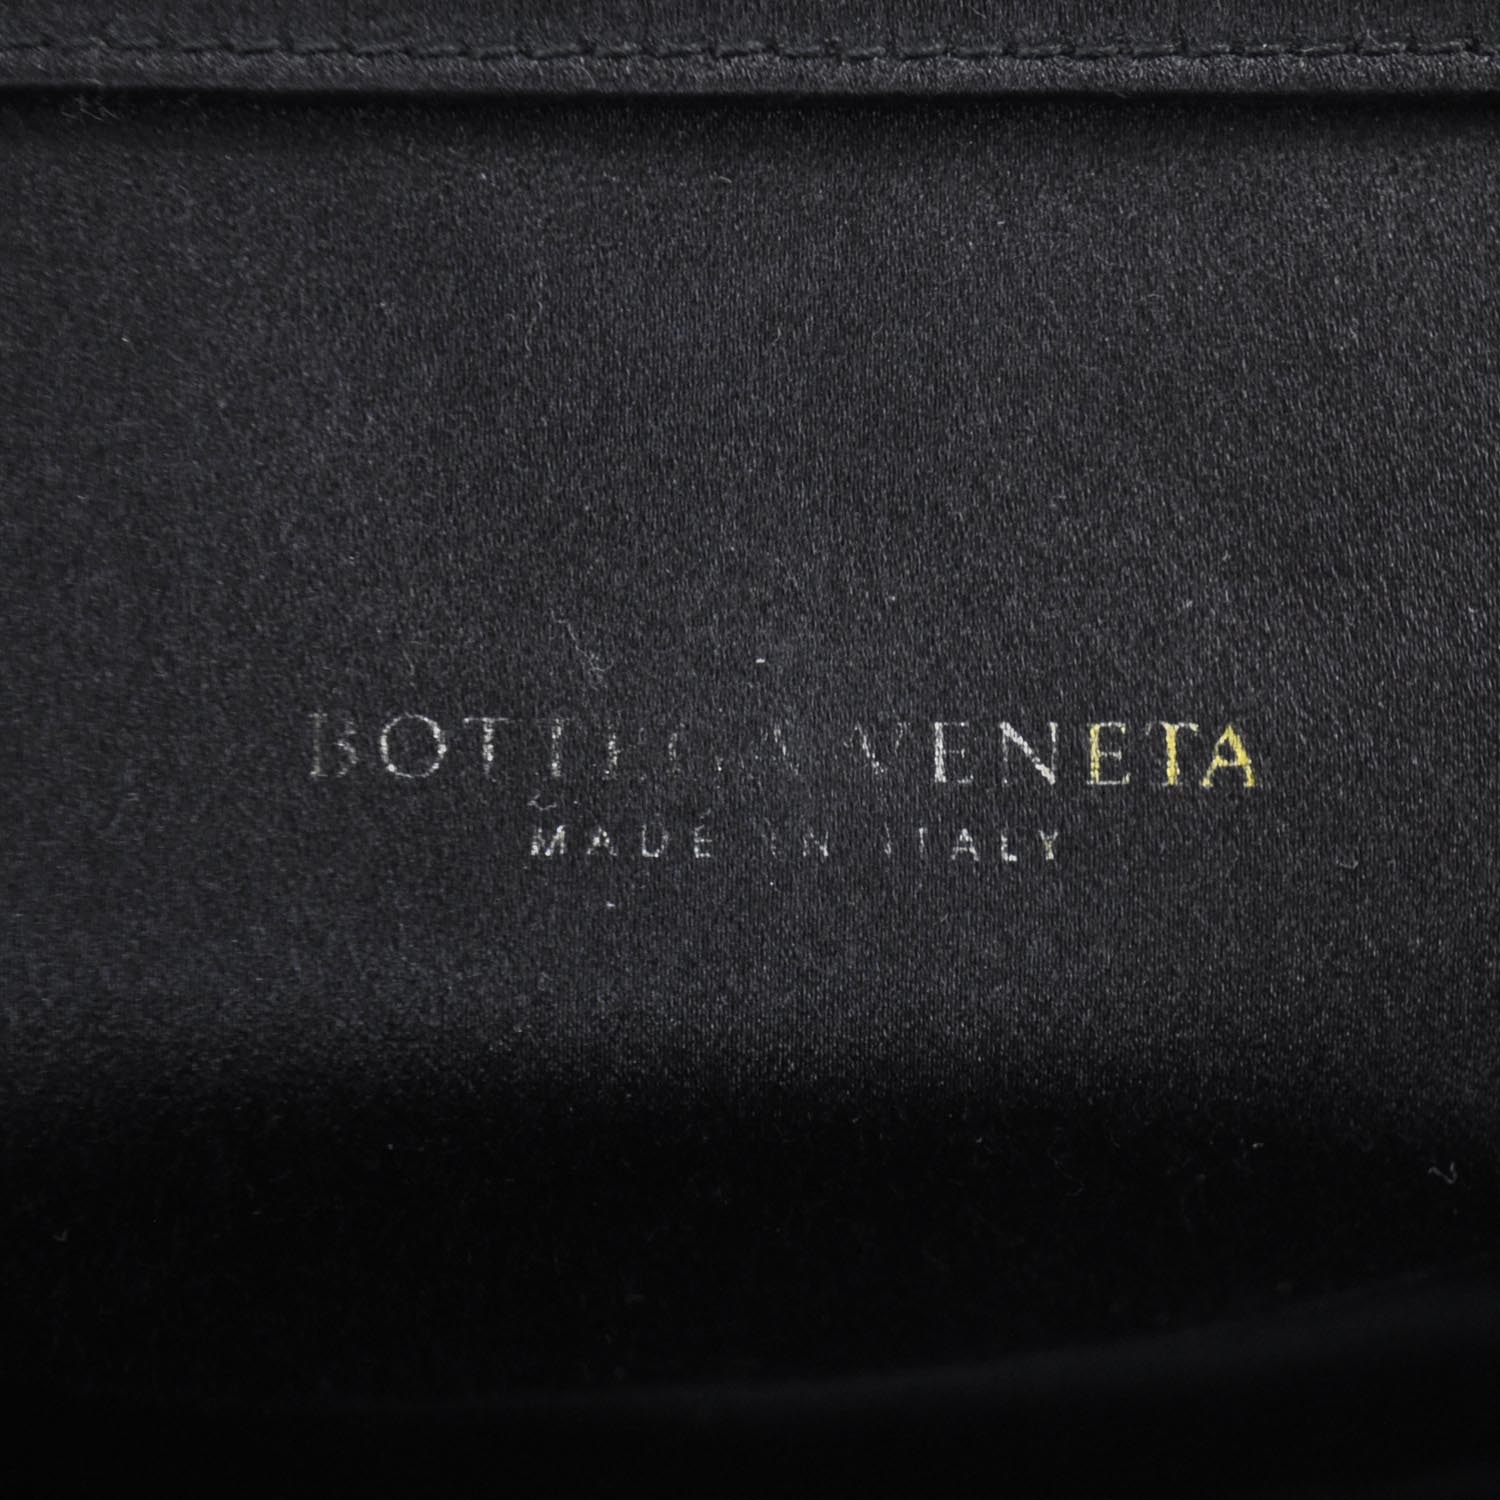 BOTTEGA VENETA Satin Leather Laser Cut Floral Frame Bag 22747